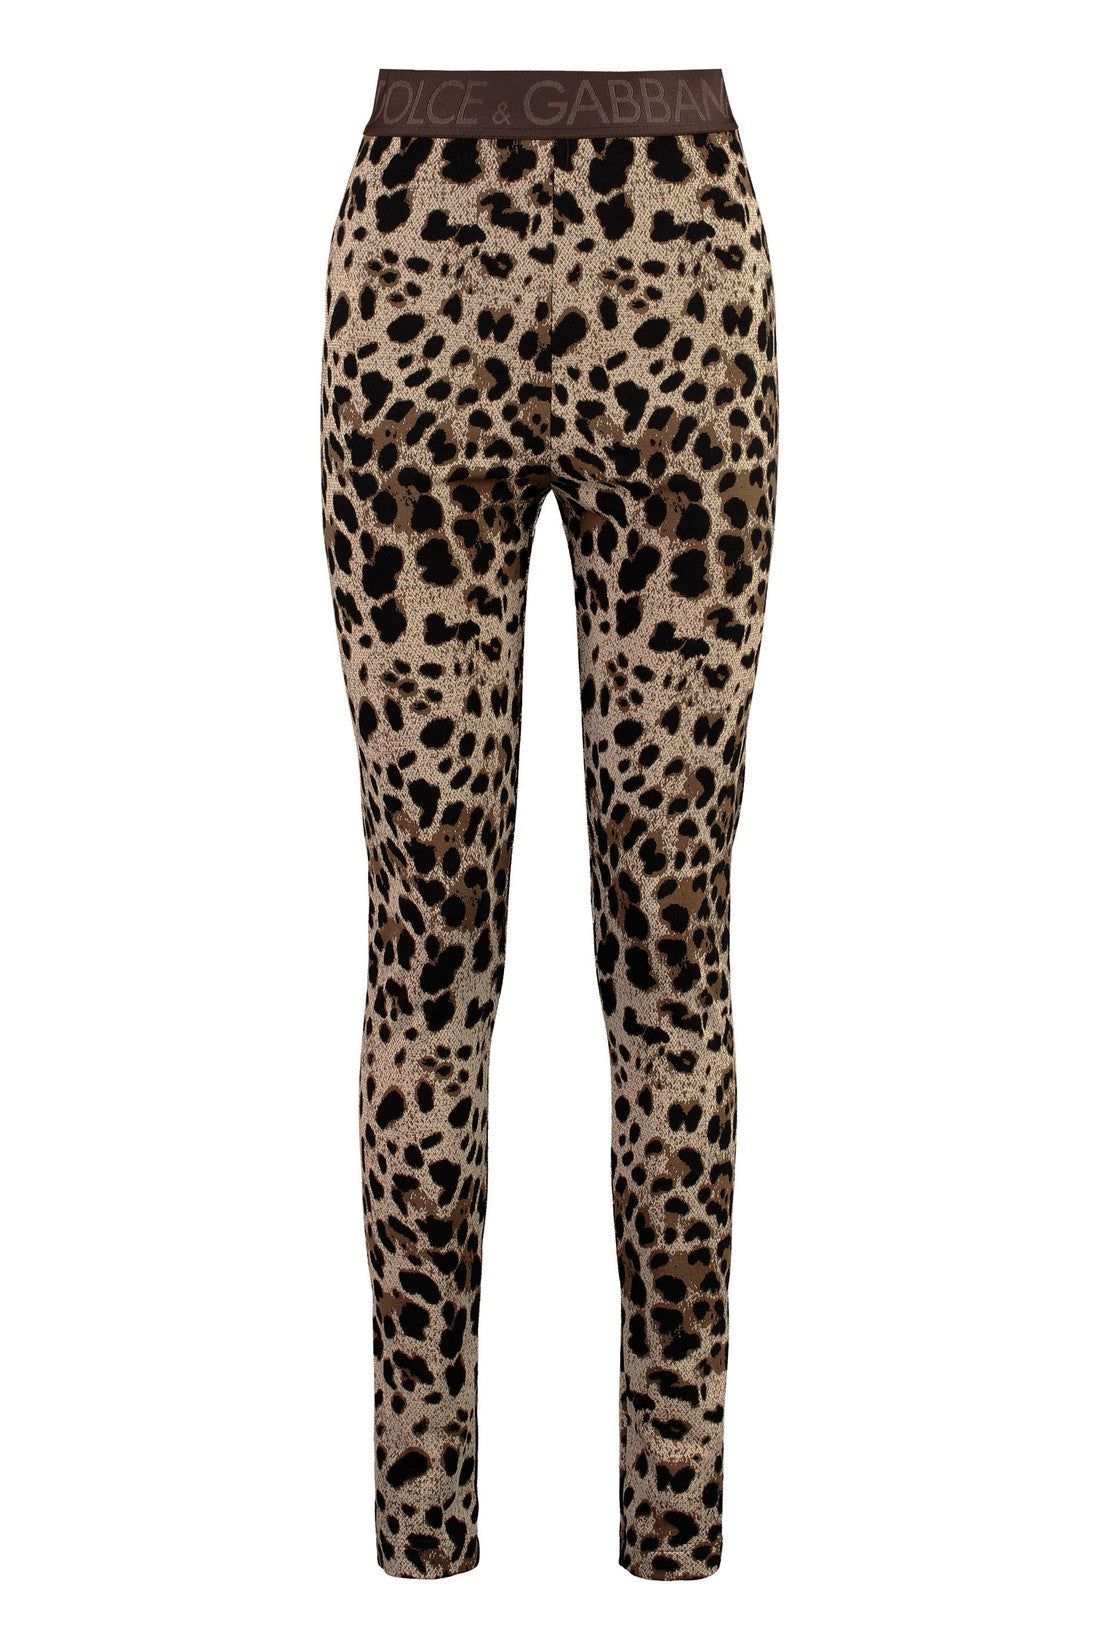 Dolce & Gabbana-OUTLET-SALE-Knit leggings-ARCHIVIST